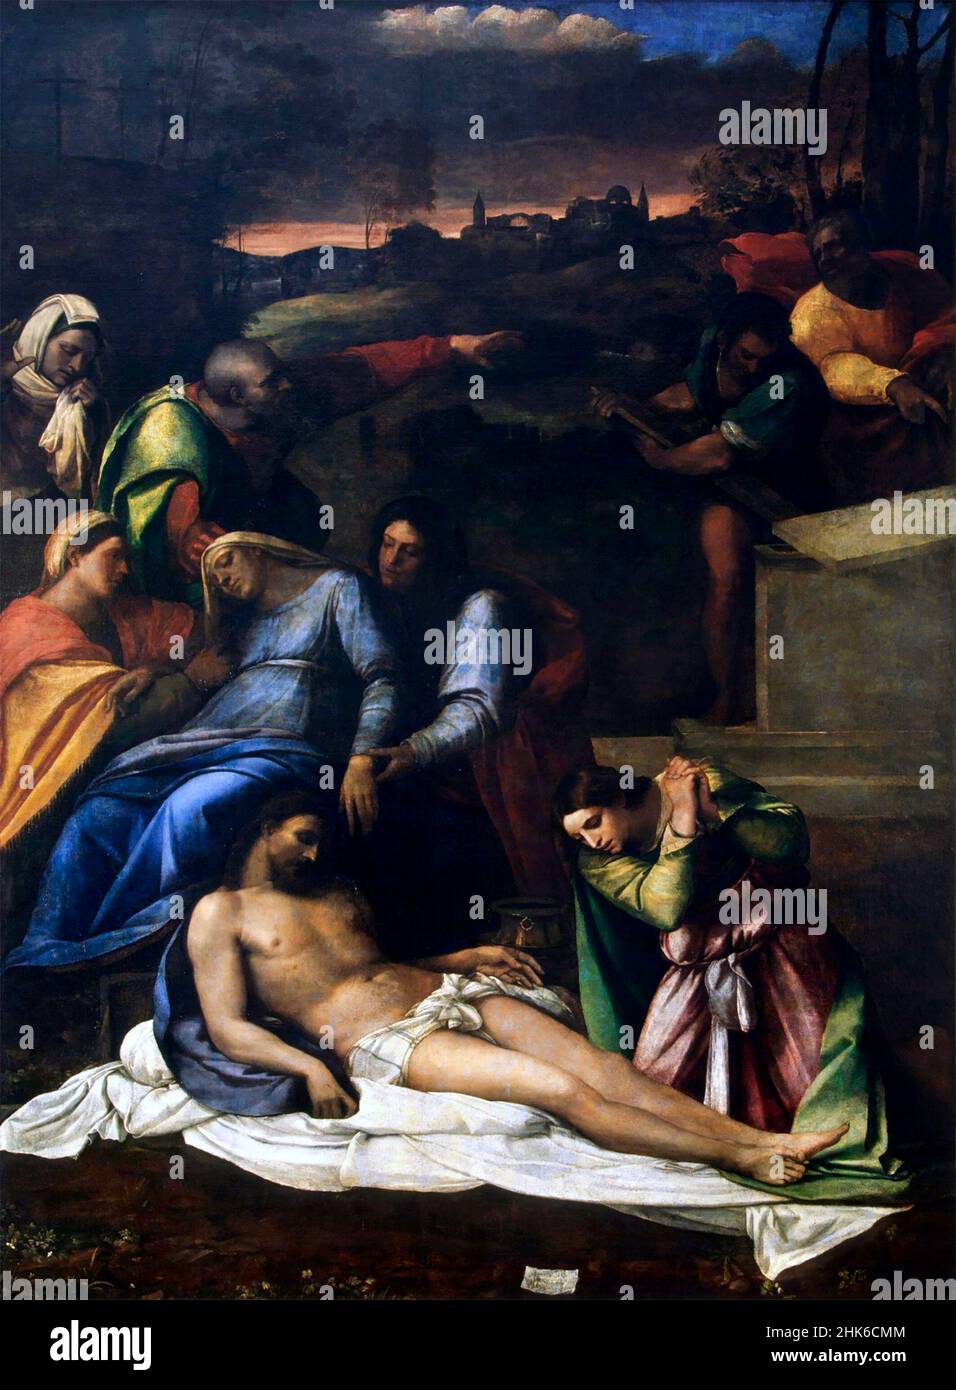 The Lamentation by the Italian painter, Sebastiano del Piombo (c. 1485-1547), oil on canvas, 1516 Stock Photo